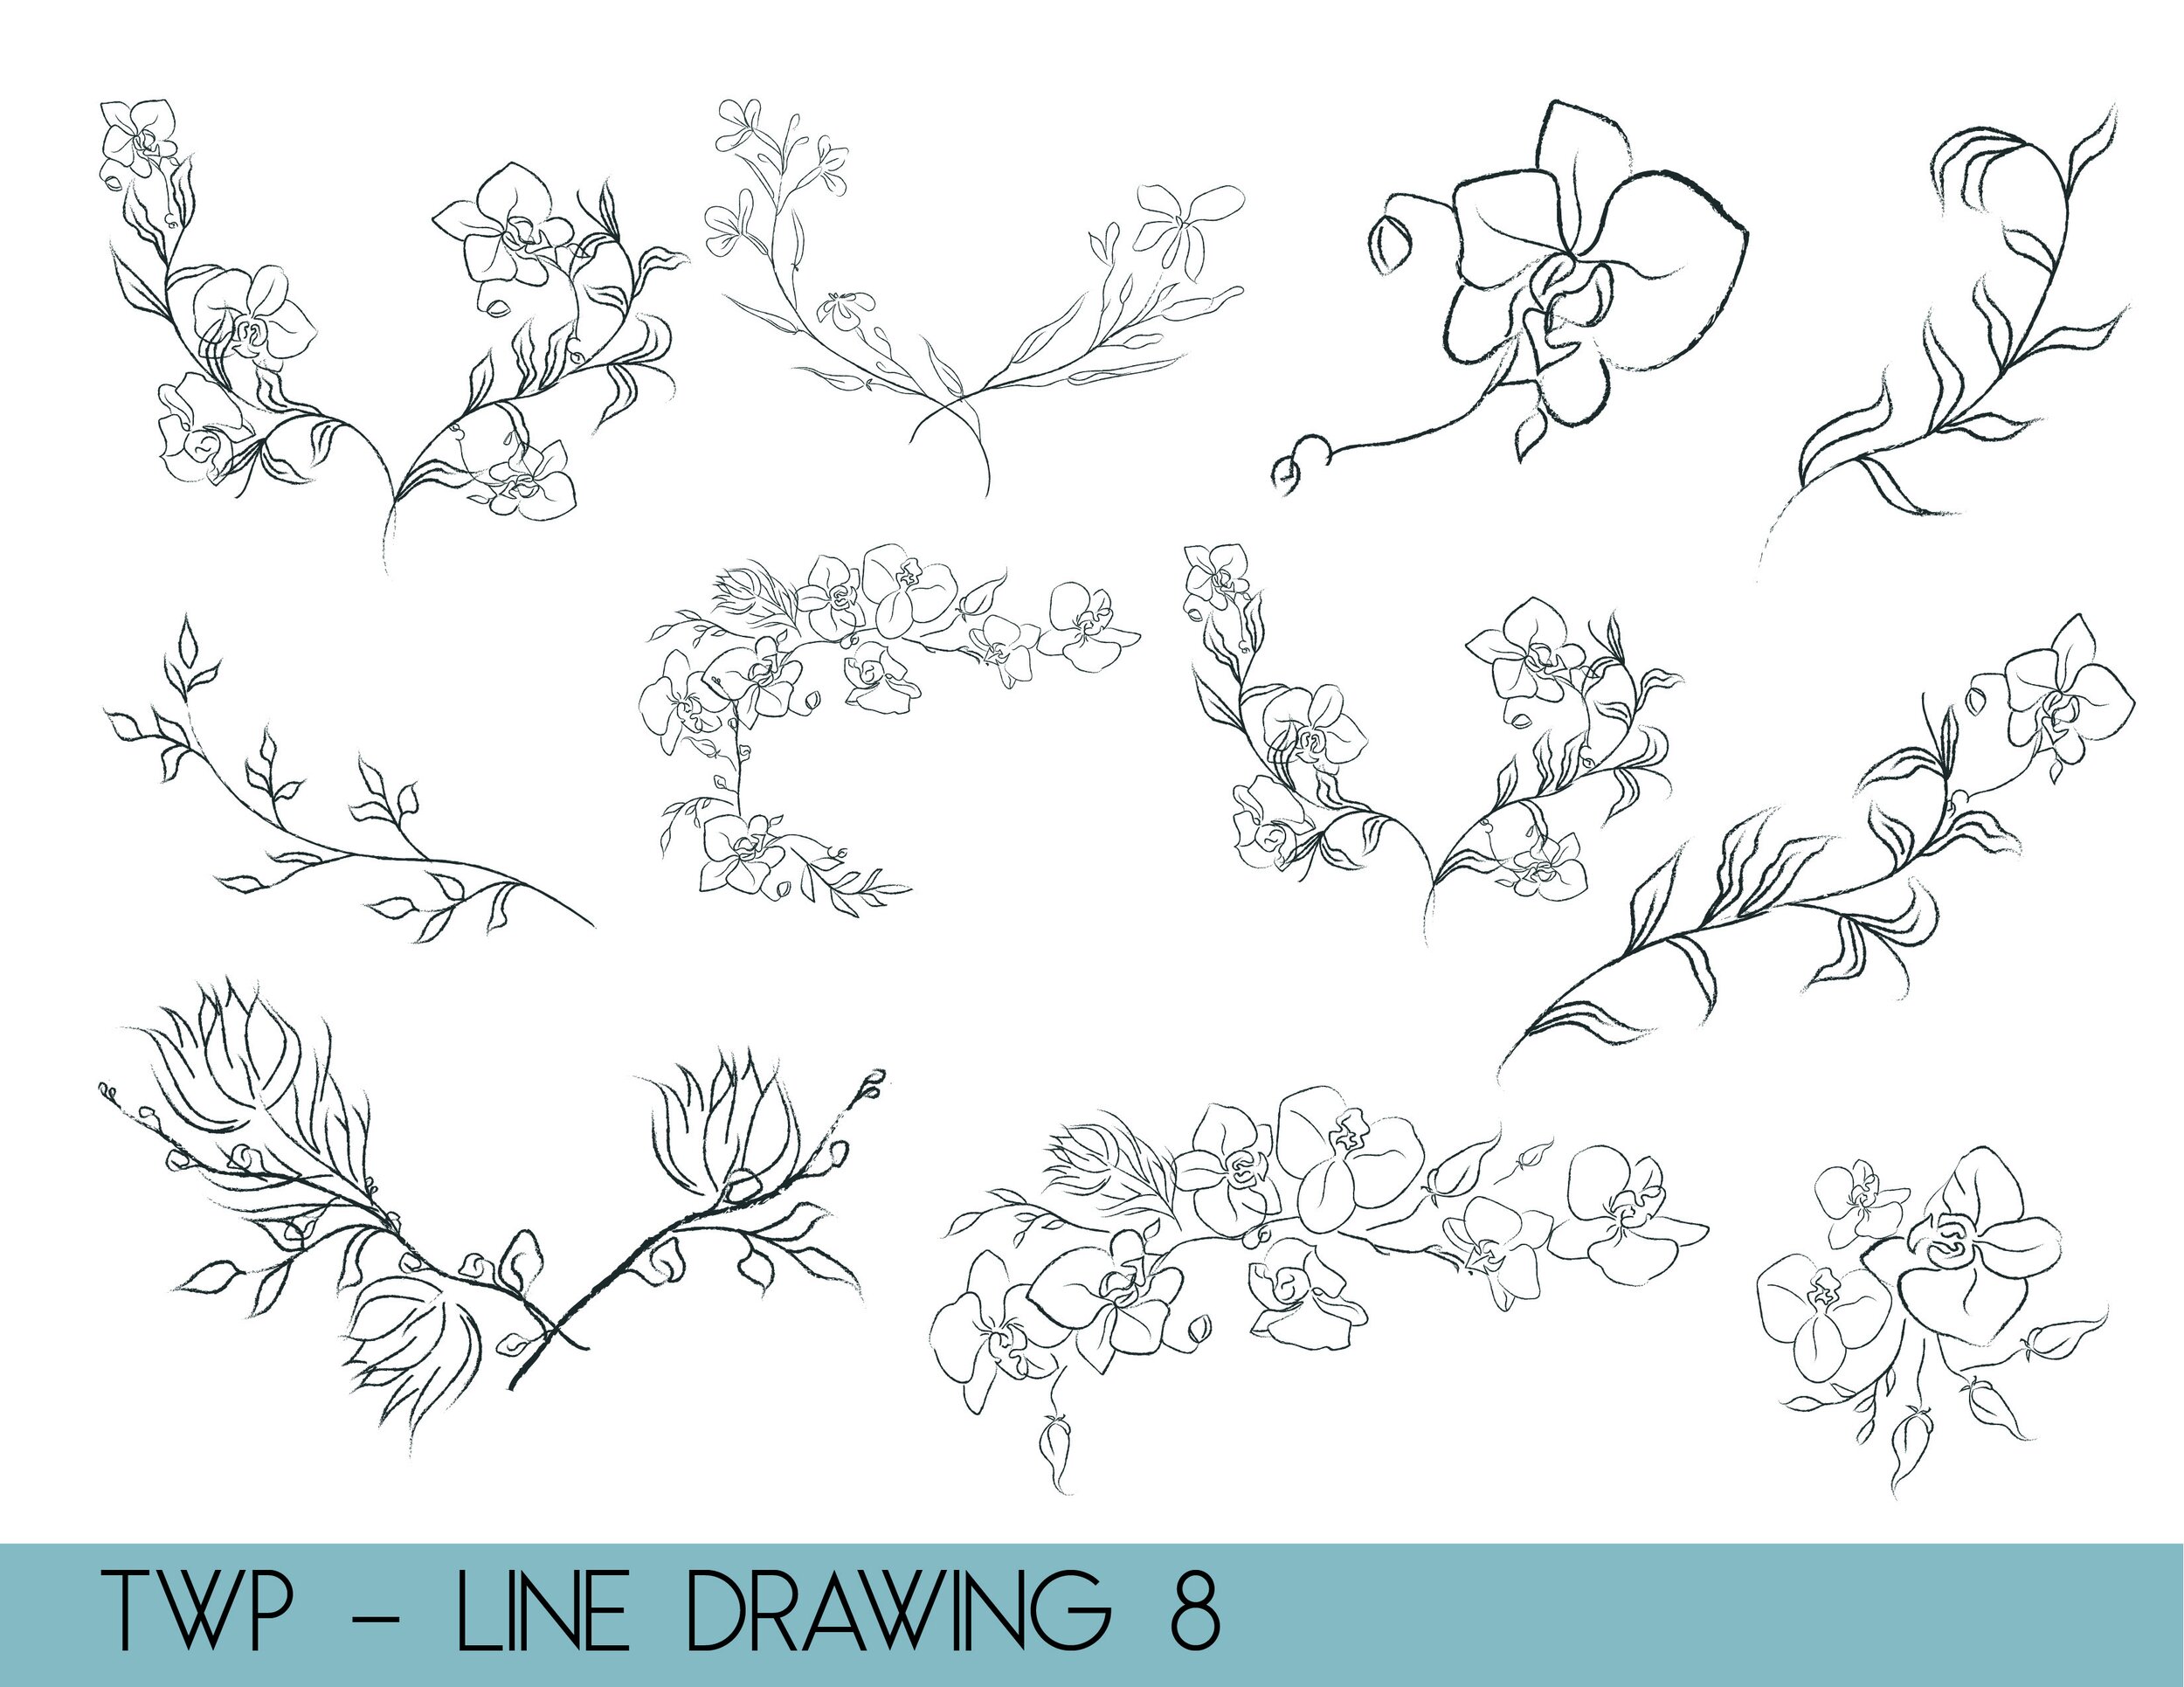 line drawings - website8.jpg